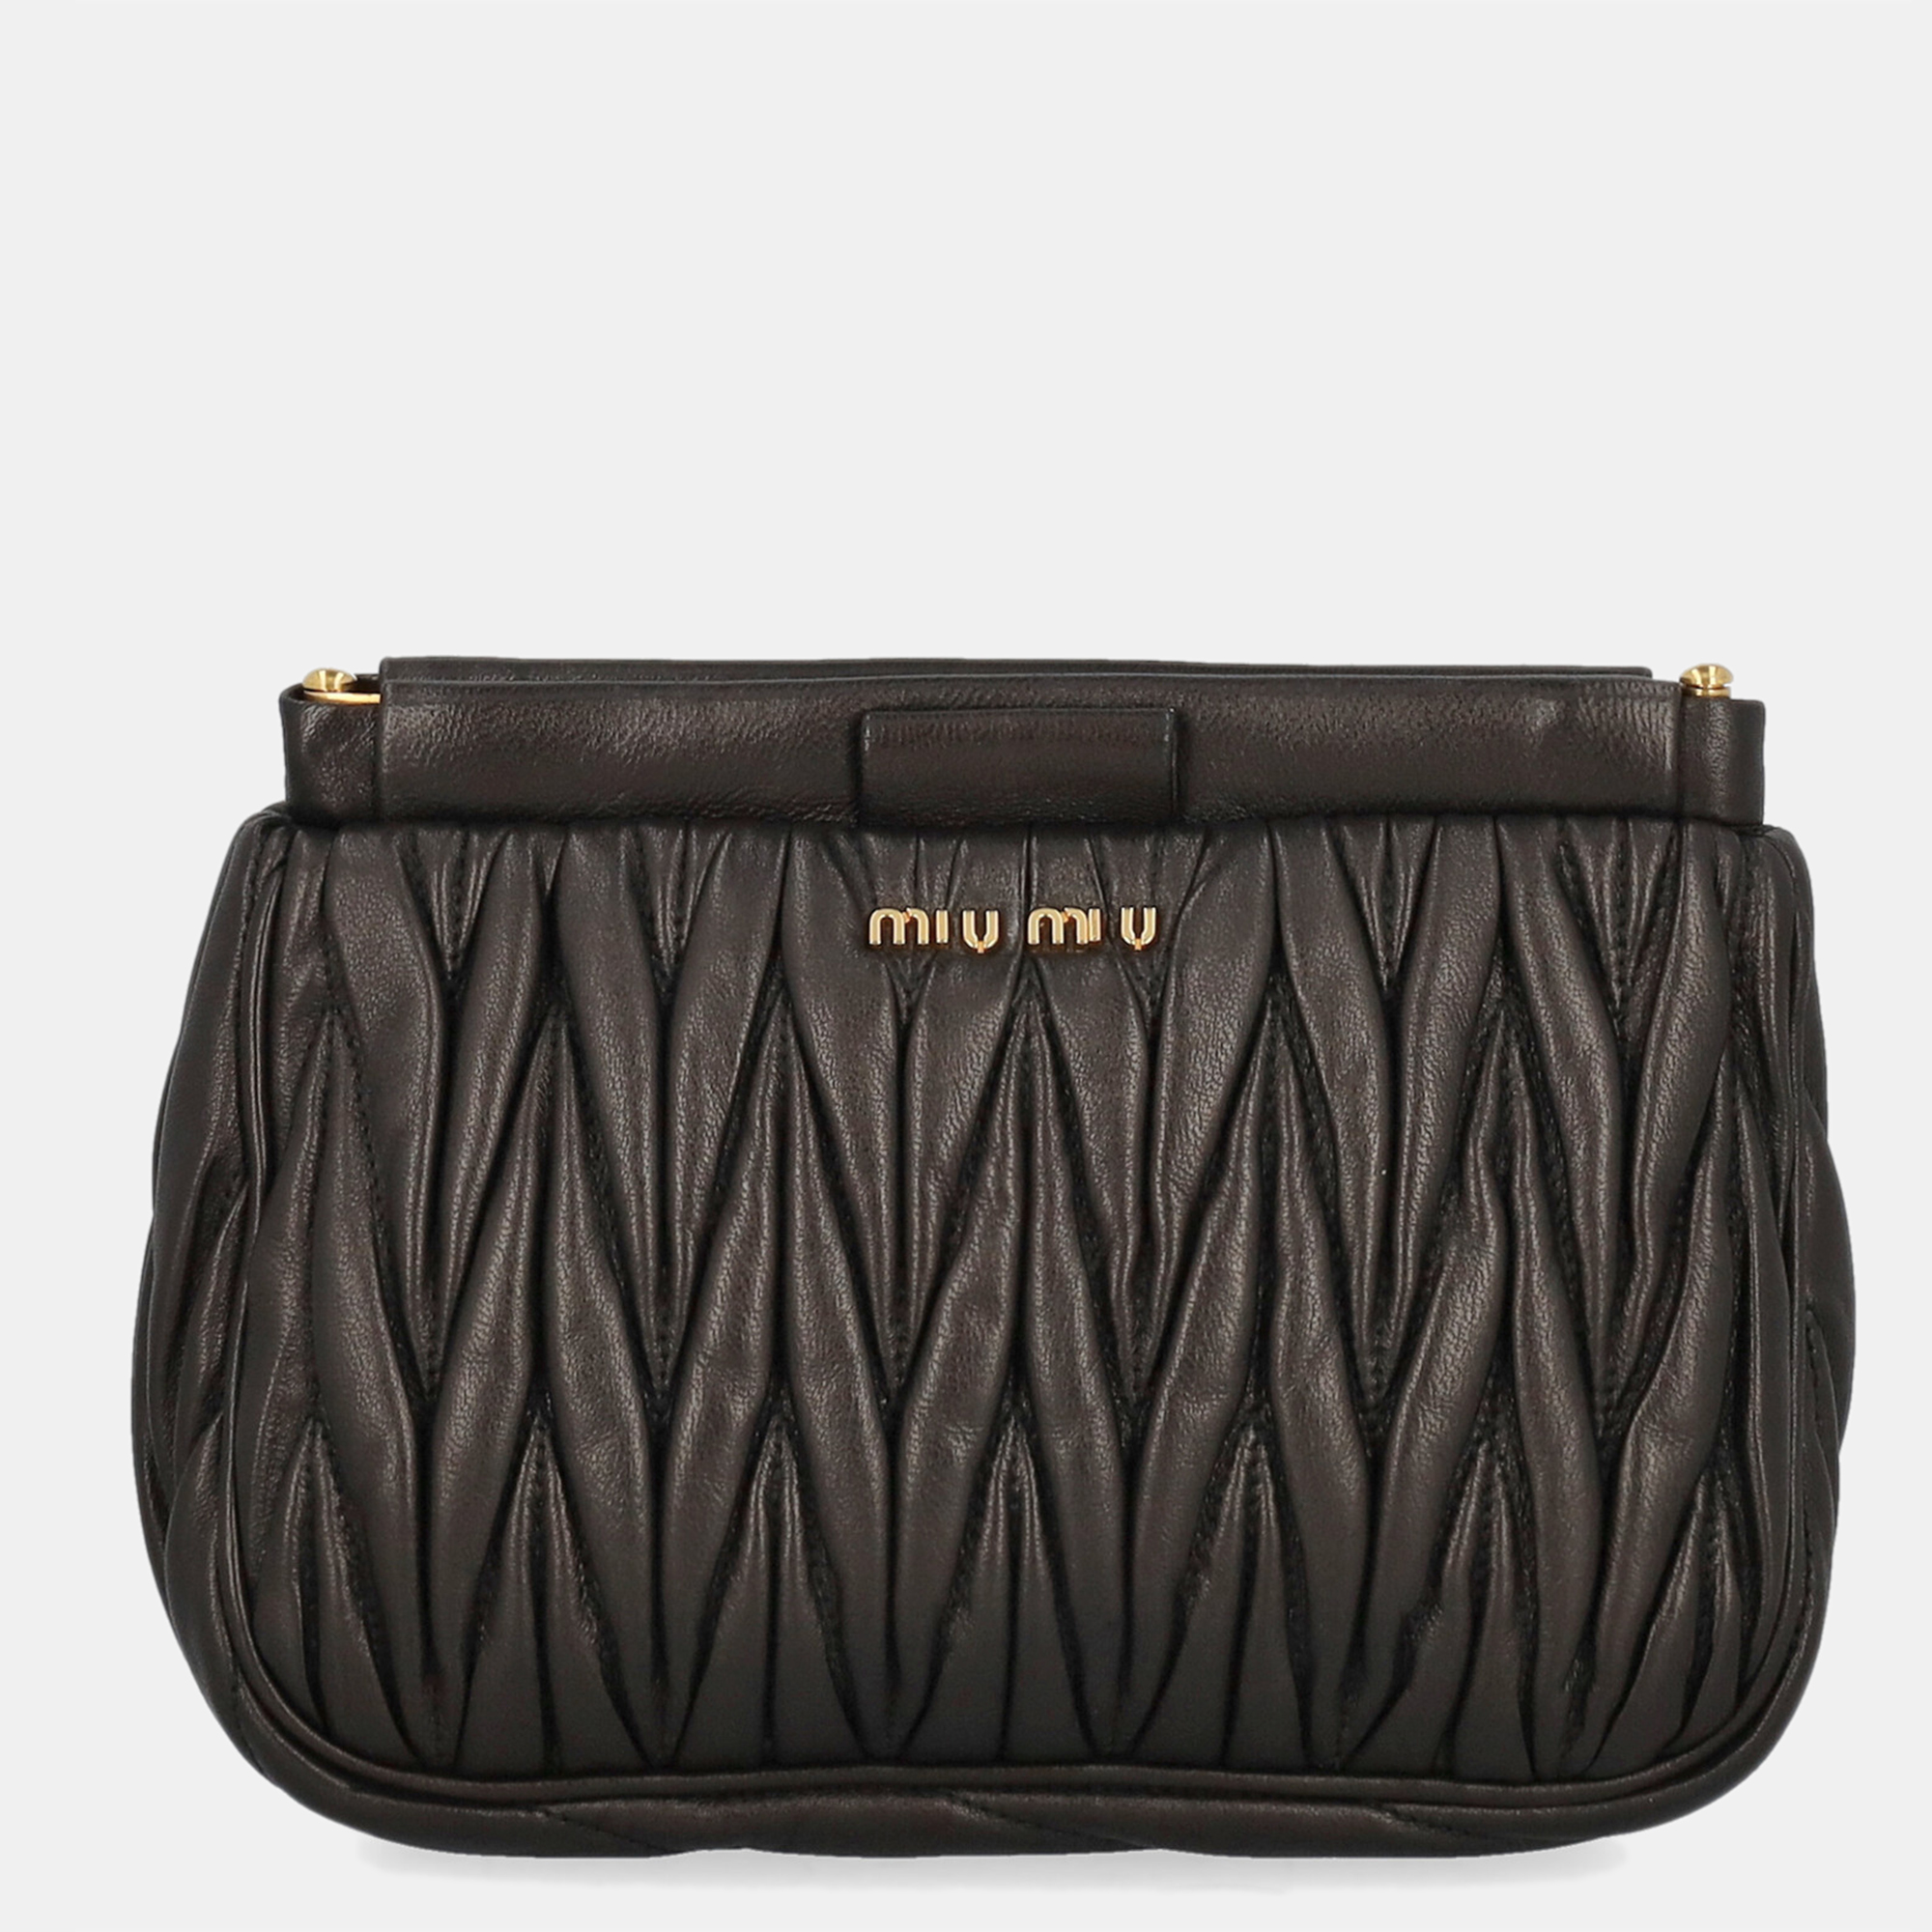 Miu Miu  Women's Leather Clutch Bag - Black - One Size